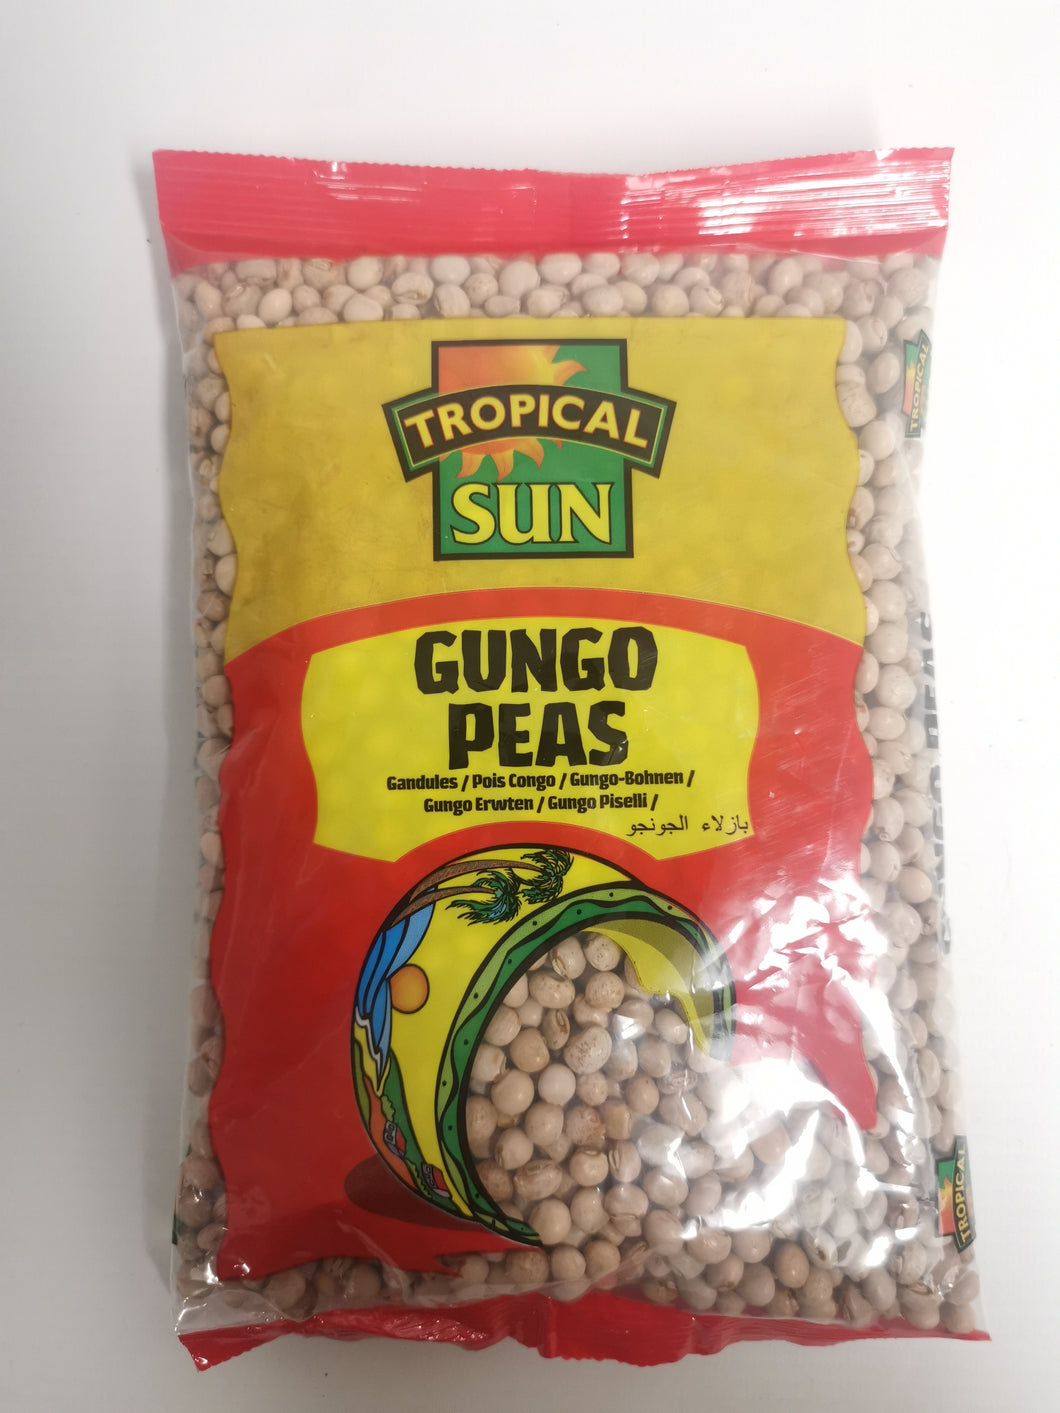 Tropical Sun Gungo Peas